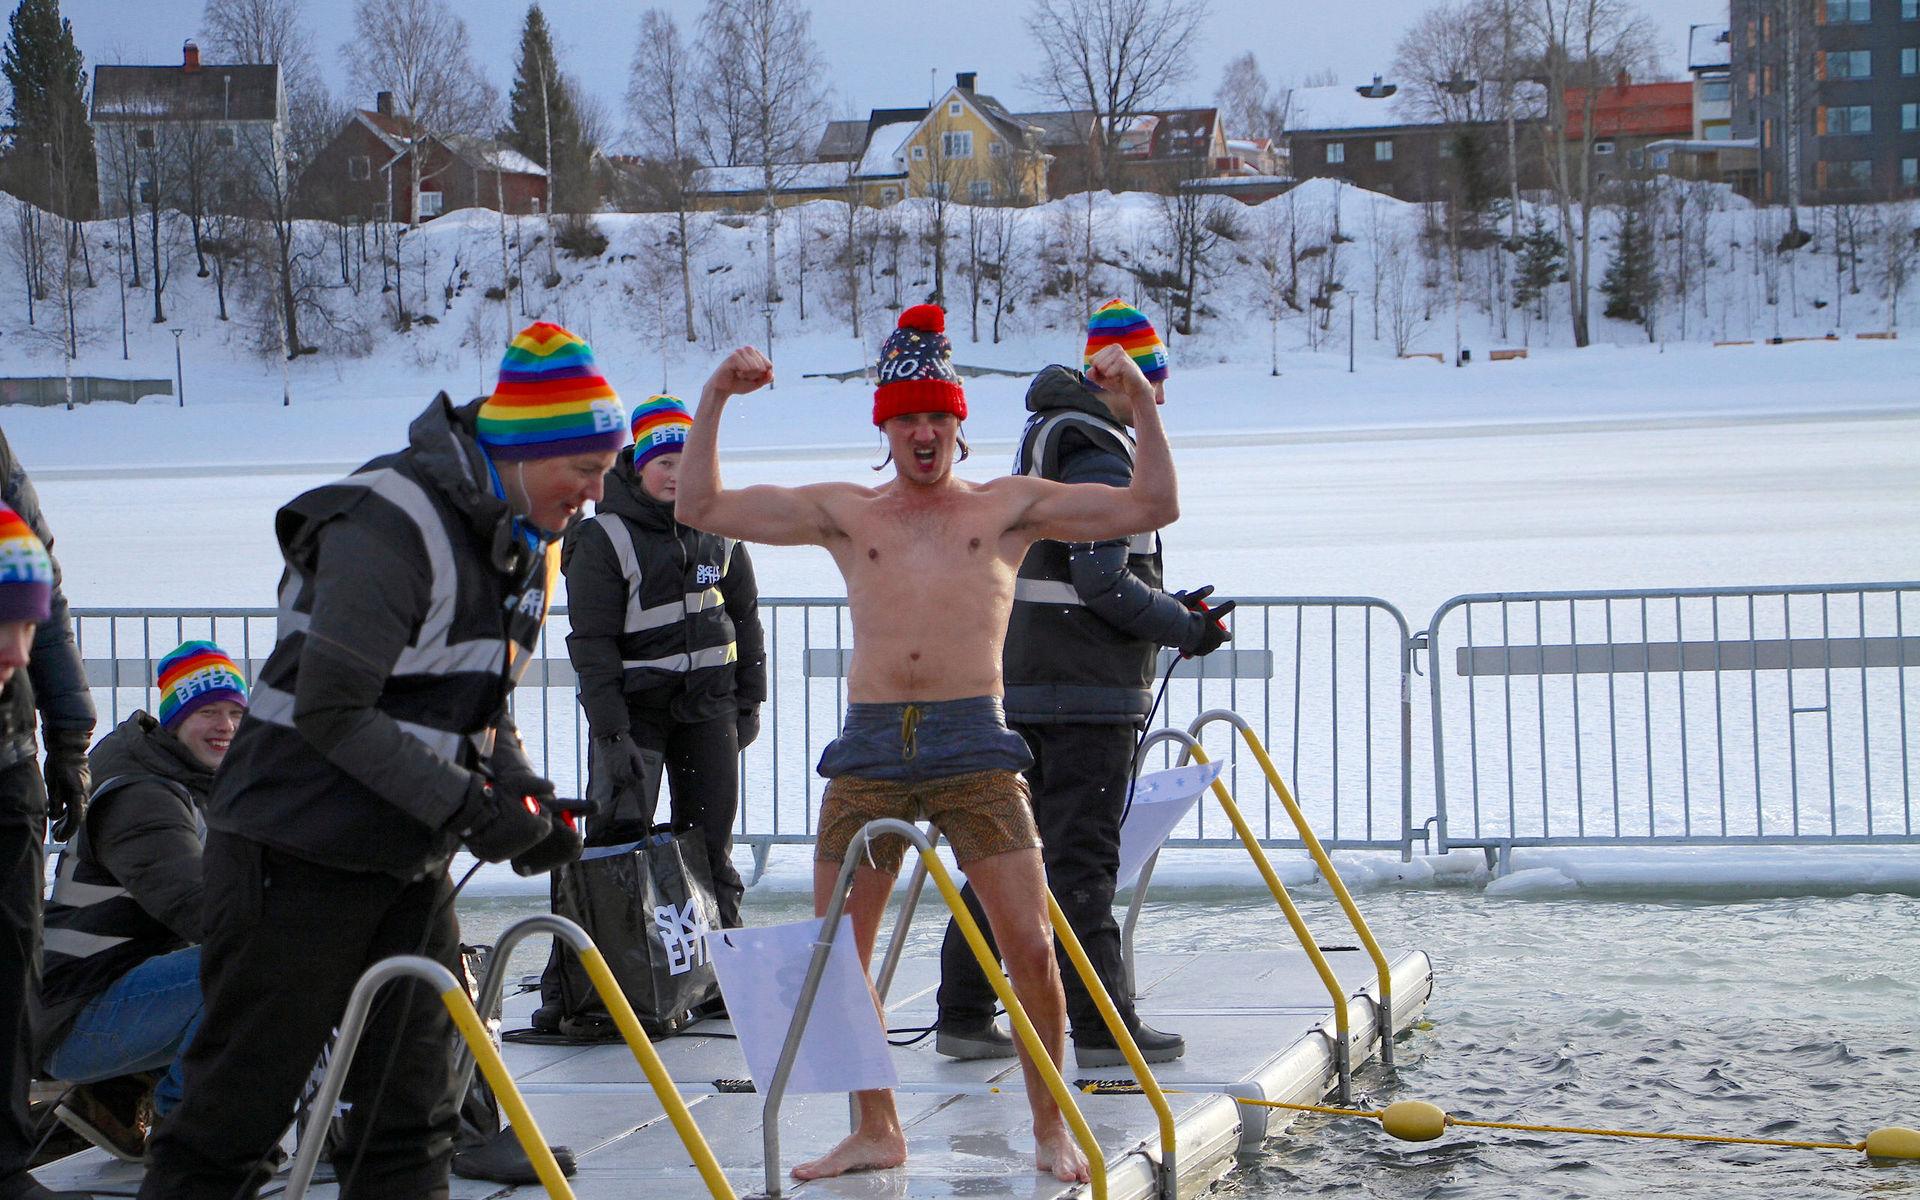 Pontus Johansson jublar efter målgången, medan de väl påpälsade funktionärerna inväntar de övriga deltagarna i heatet. Vintersimmet i Skellefteälvens februarikalla vatten lockar allt fler deltagare.